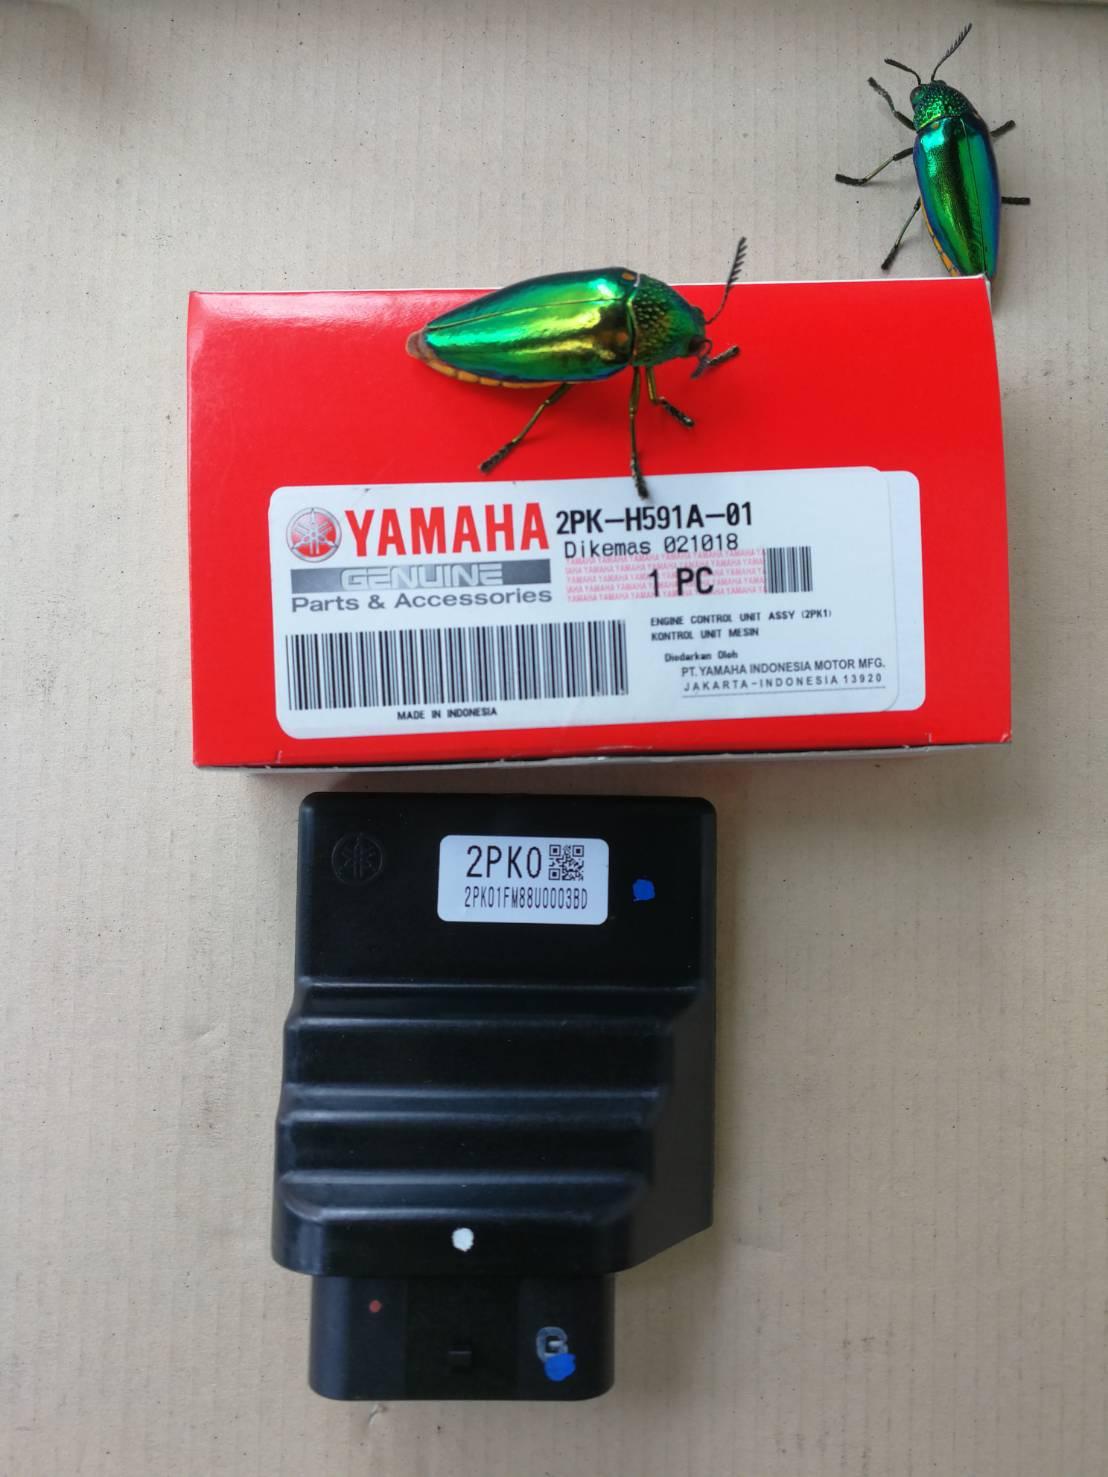 ตัวควบคุมไฟ CDI ยามาฮ่า Yamaha R15 ปี 2015 (2PK-H591A-01) ของแท้